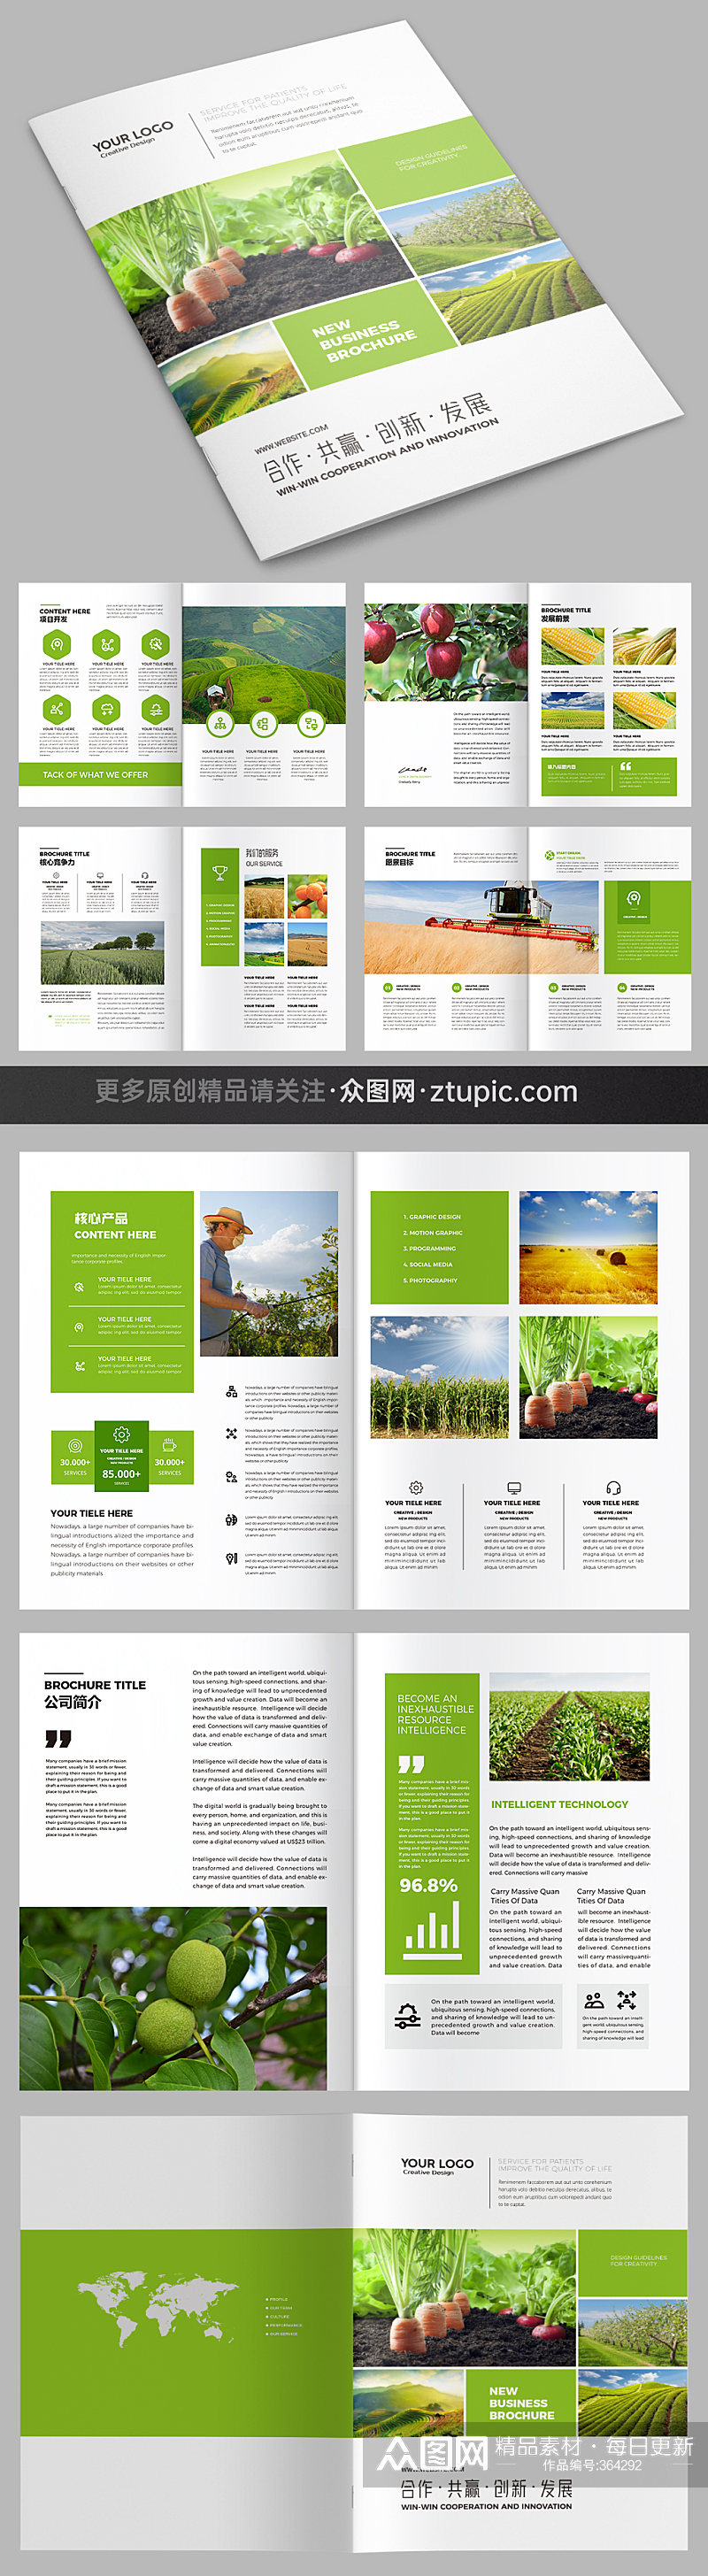 农产品 农业画册合作社宣传册模板素材